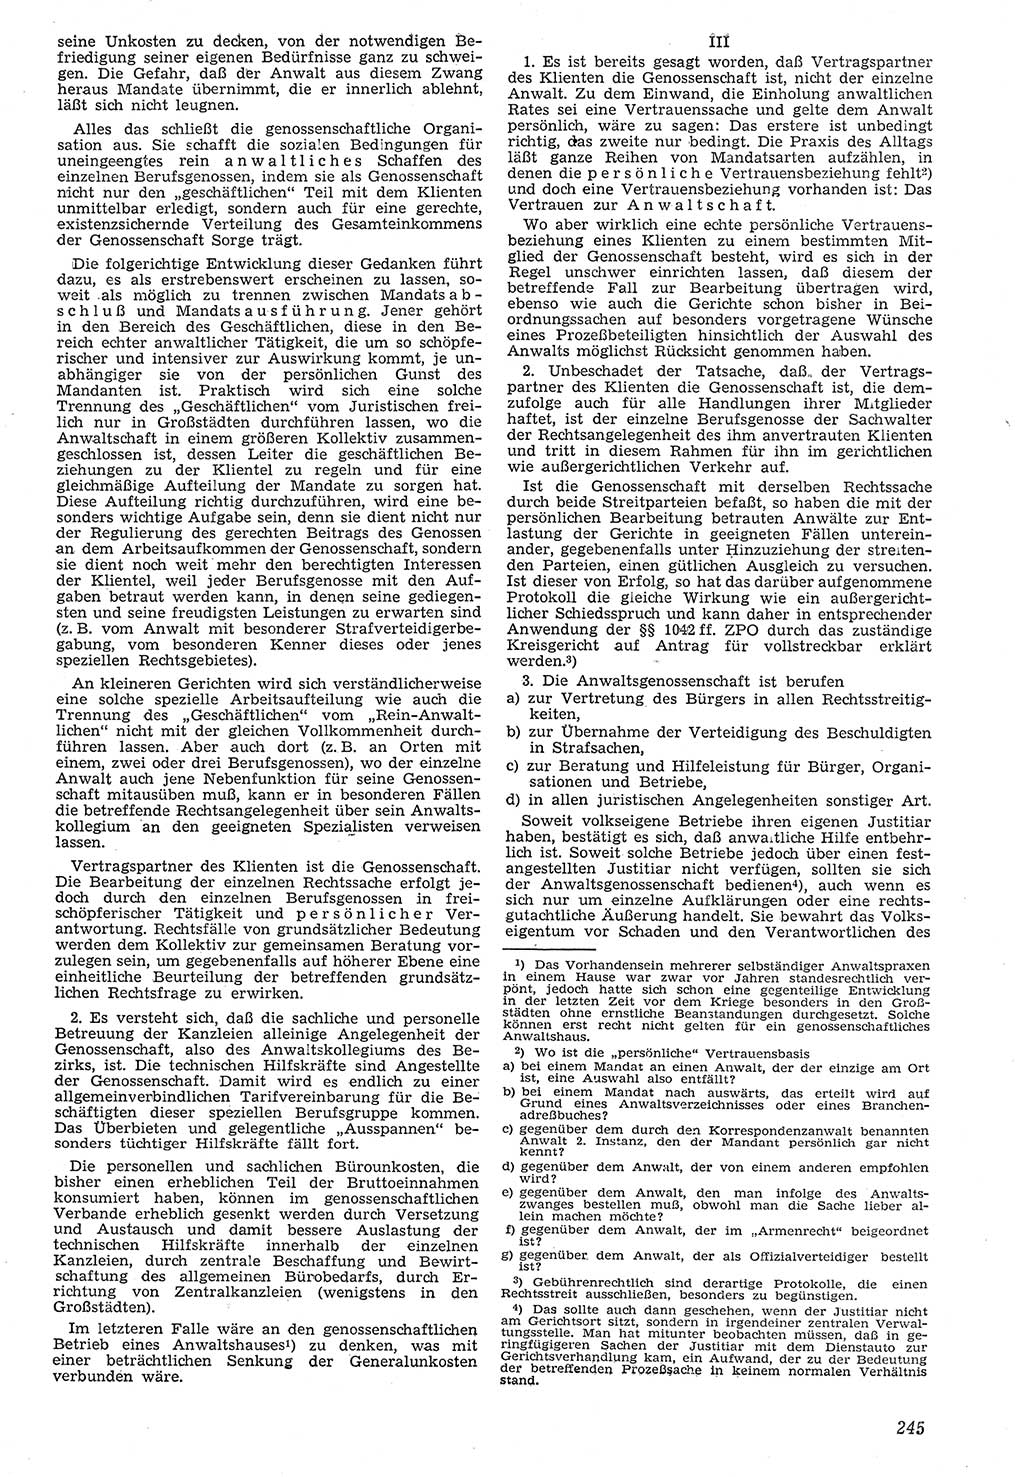 Neue Justiz (NJ), Zeitschrift für Recht und Rechtswissenschaft [Deutsche Demokratische Republik (DDR)], 7. Jahrgang 1953, Seite 245 (NJ DDR 1953, S. 245)